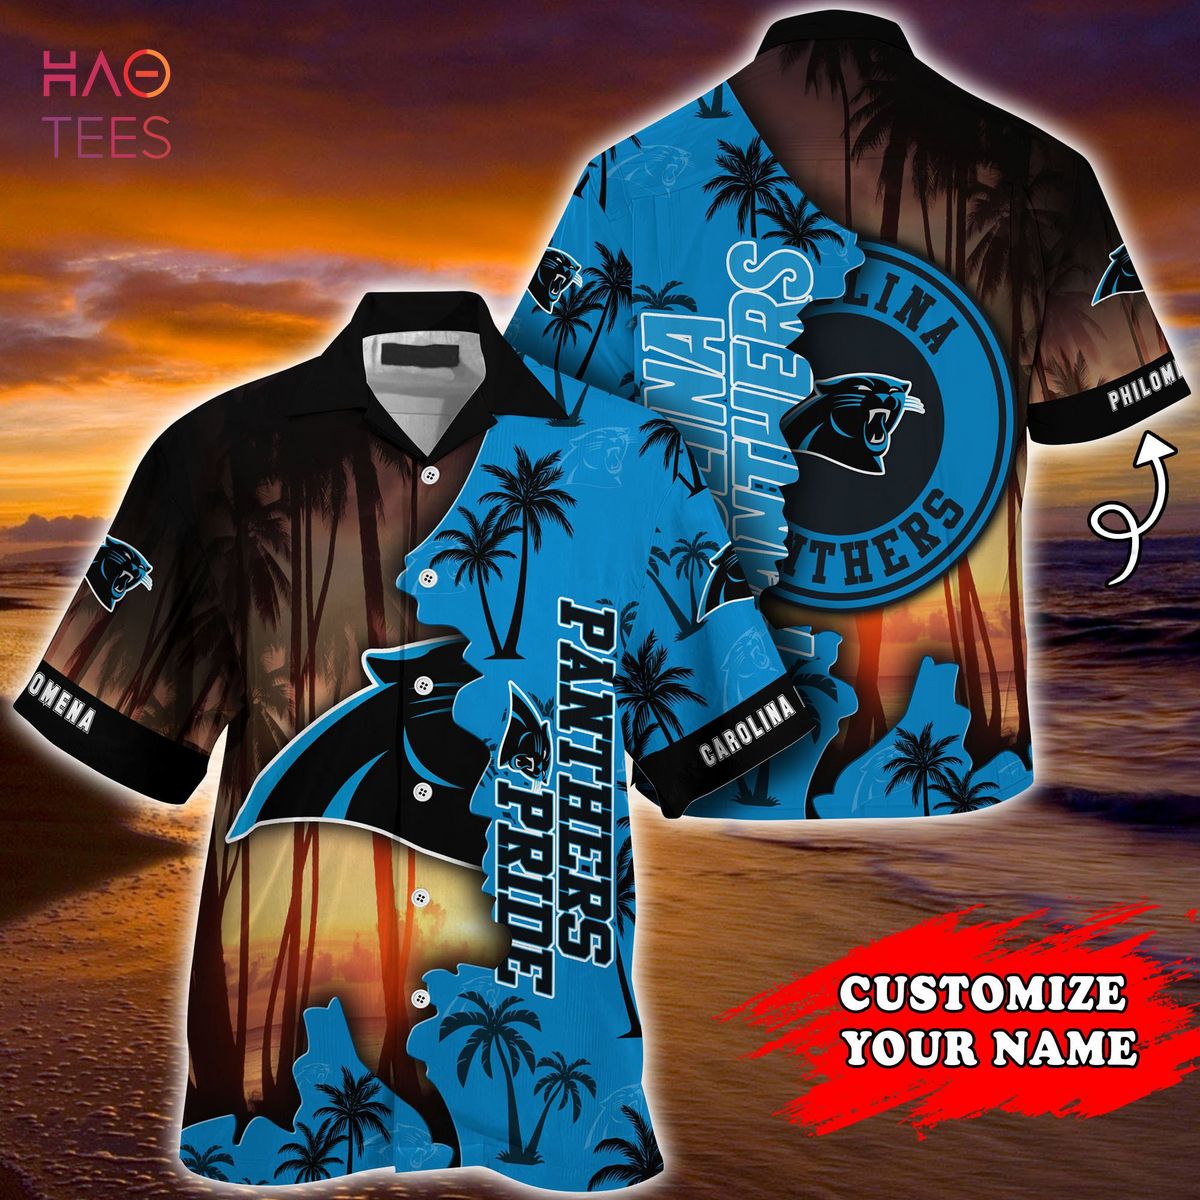 Carolina Panthers NFL Customized Summer Hawaiian 3D Shirt